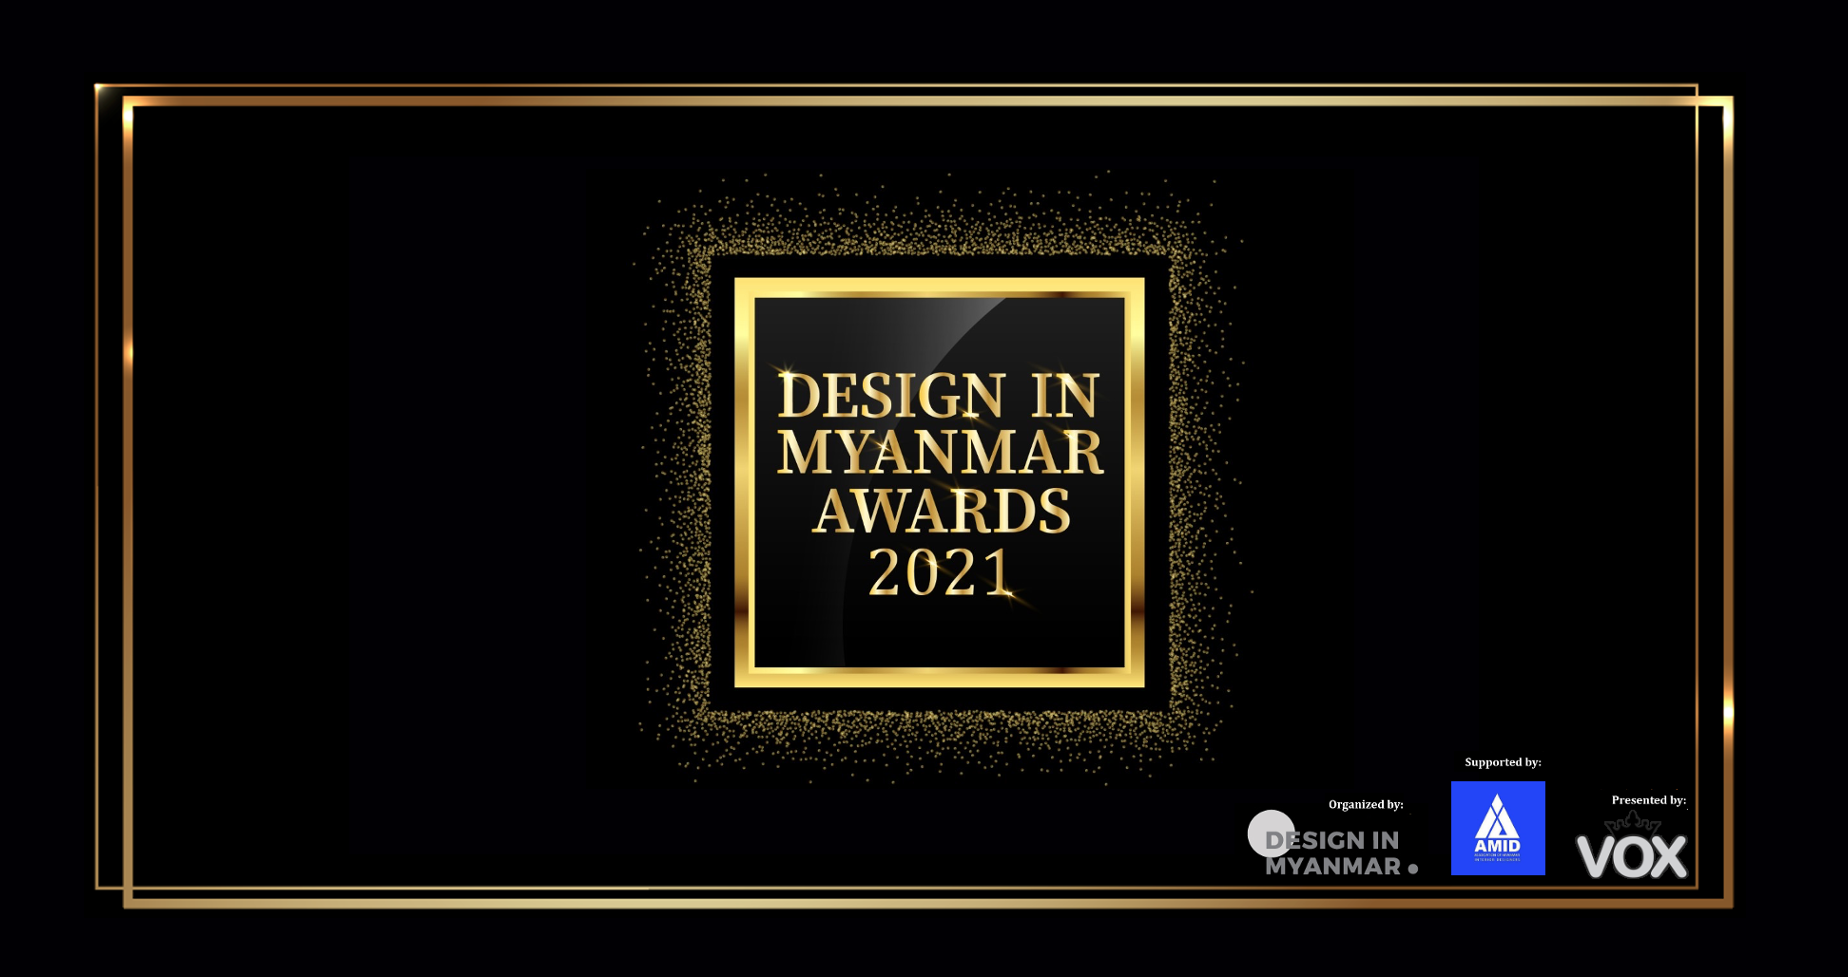 DESIGN IN MYANMAR AWARDS 2021